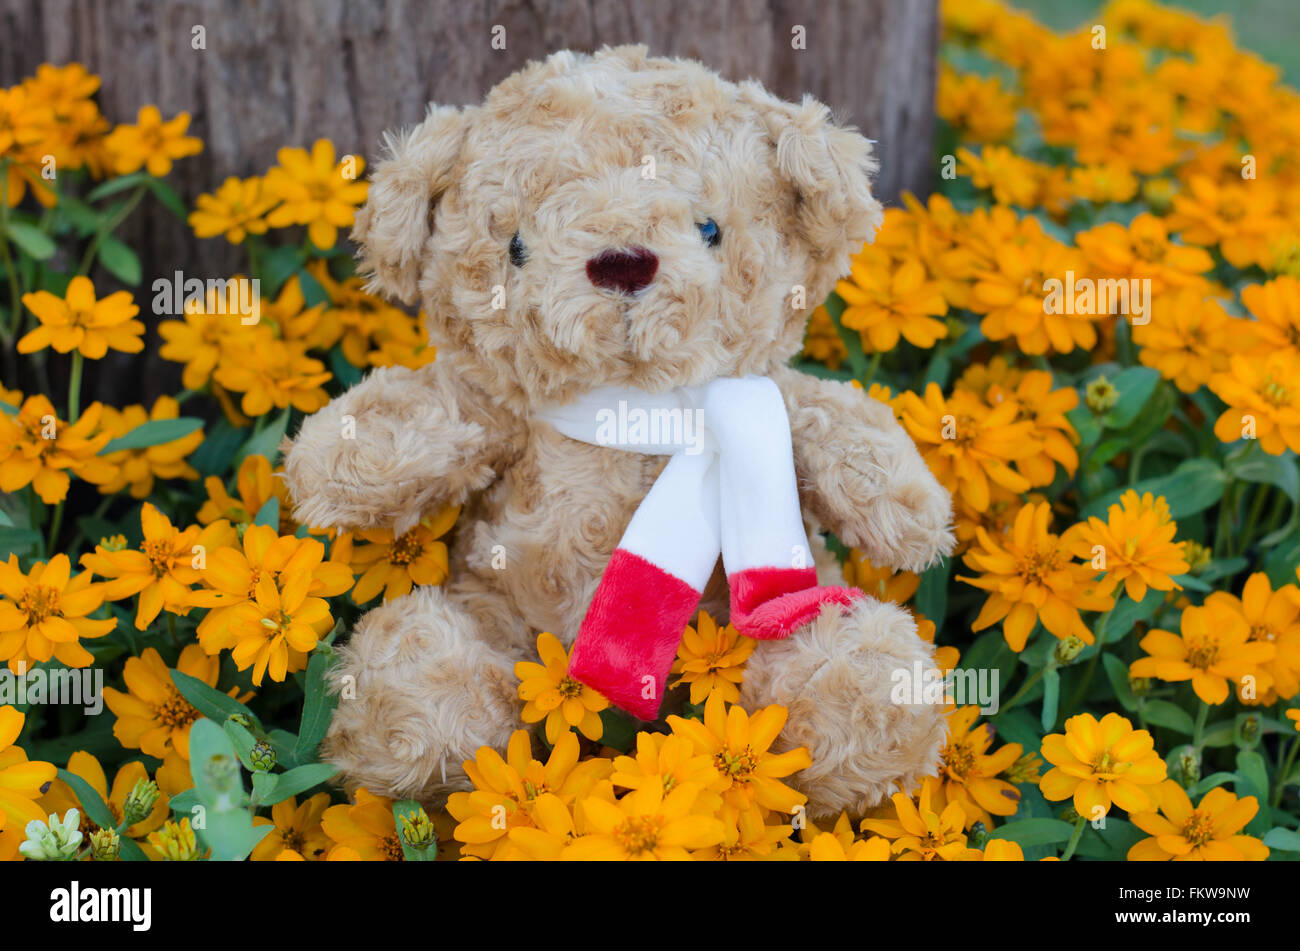 teddy bear in flower garden Stock Photo